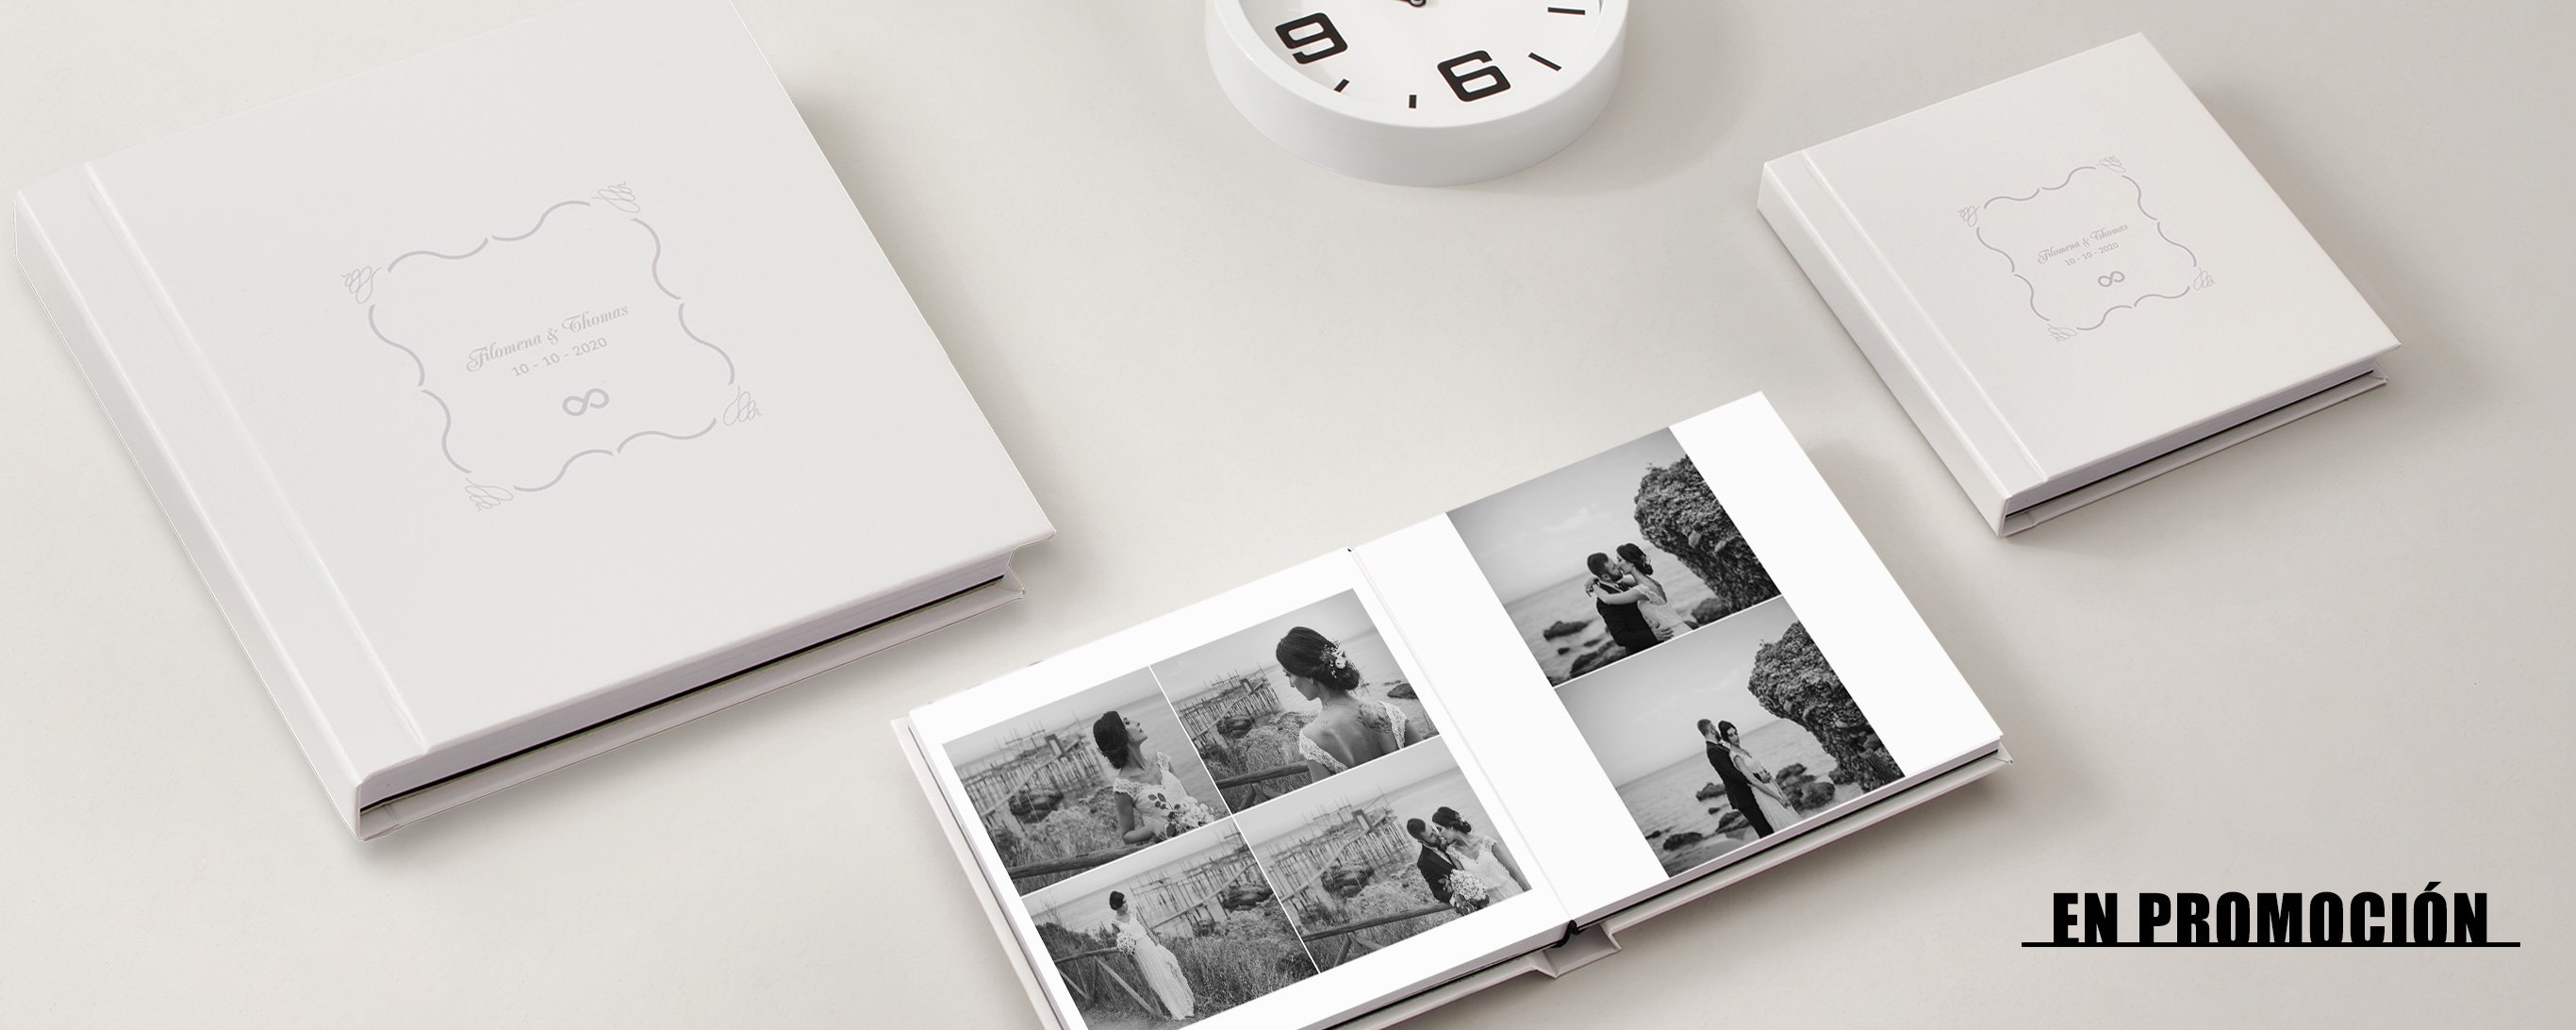 Álbumes de fotos y fotolibros tradicionales - MILK Books